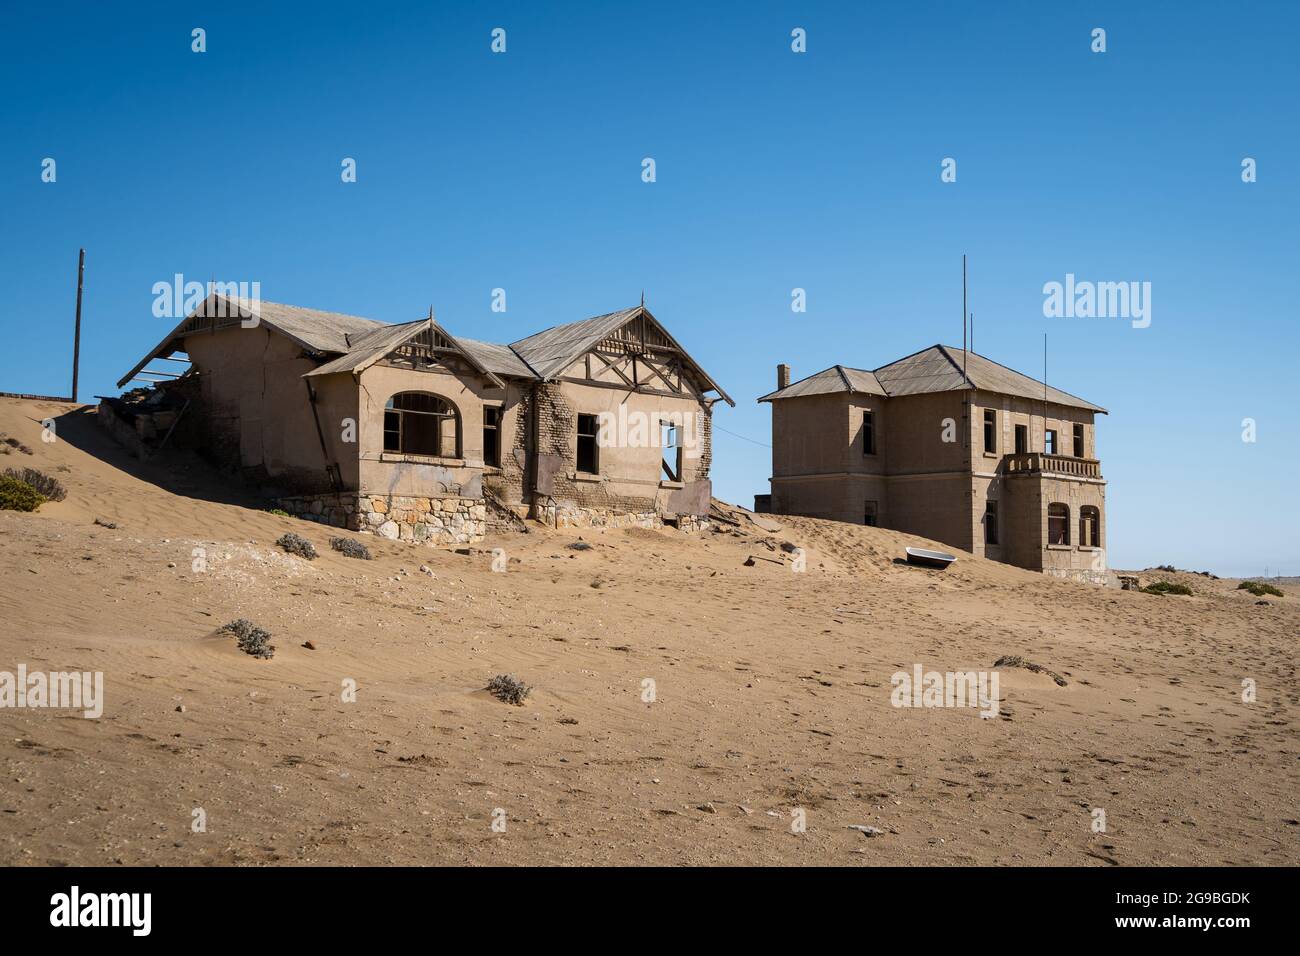 Bâtiments abandonnés à Kolmanskop, une ville fantôme près de Luderitz dans le désert du Namib, Namibie, Afrique du Sud-Ouest. Banque D'Images